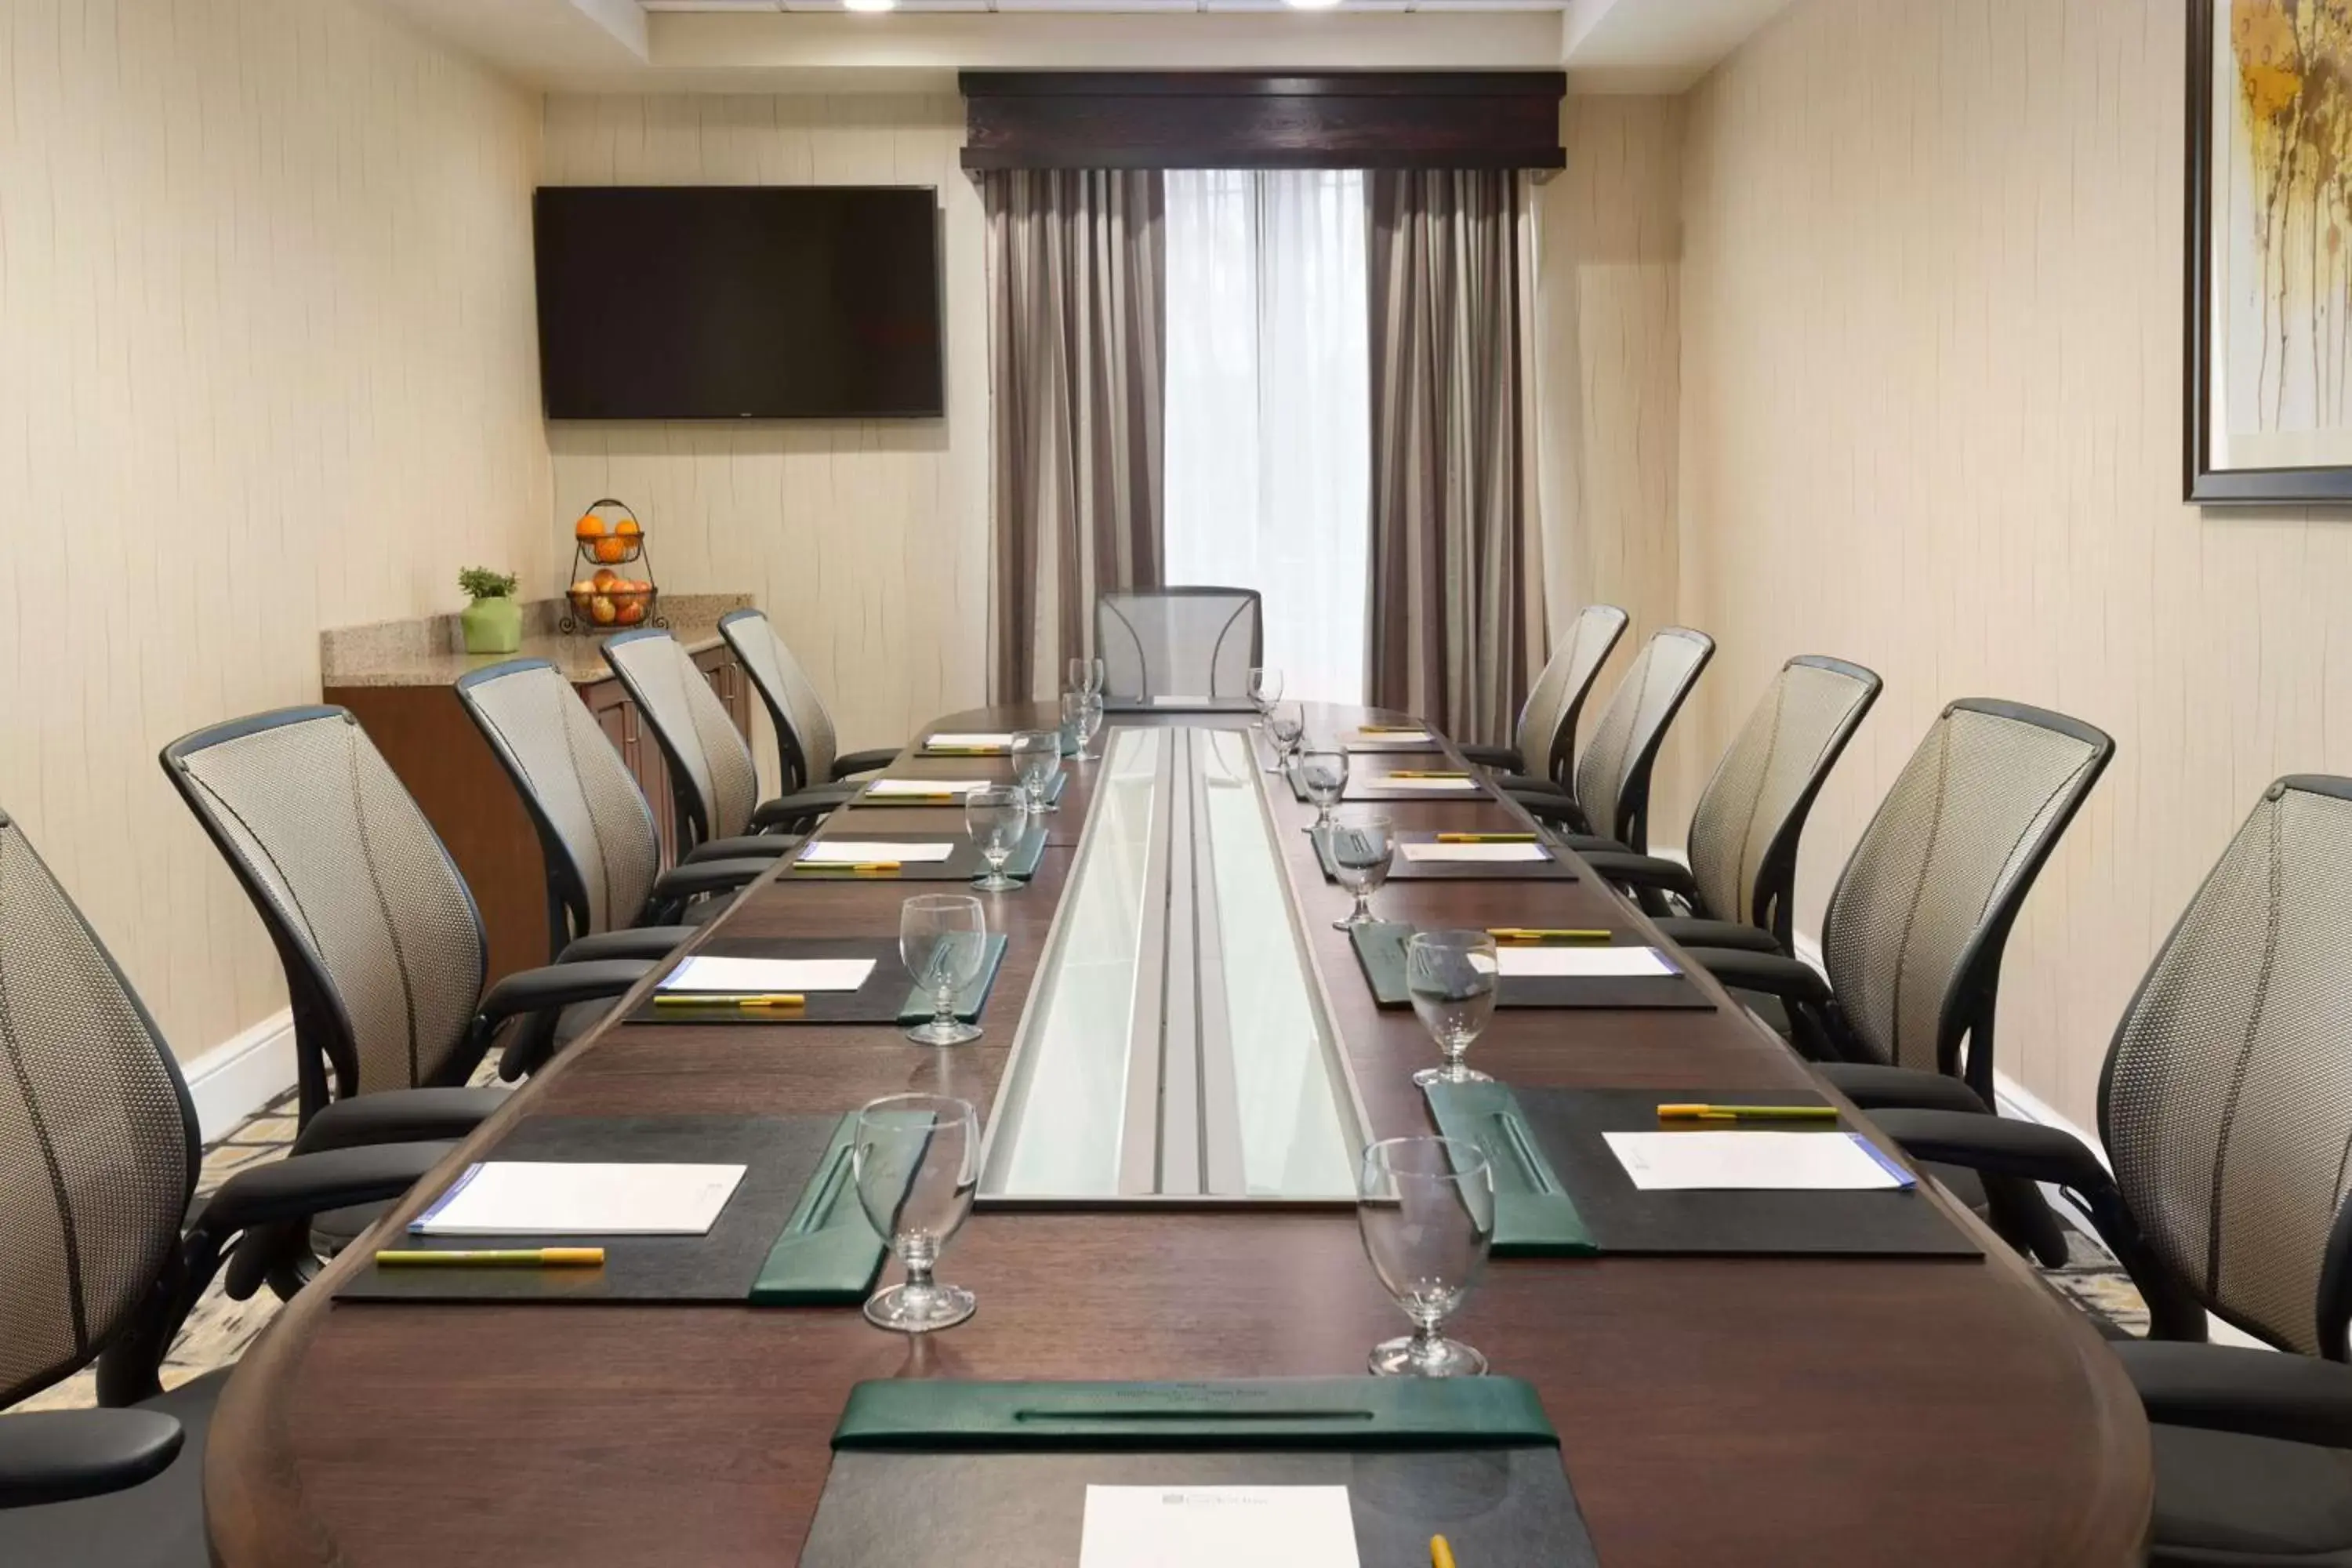 Meeting/conference room in Hilton Garden Inn Shelton